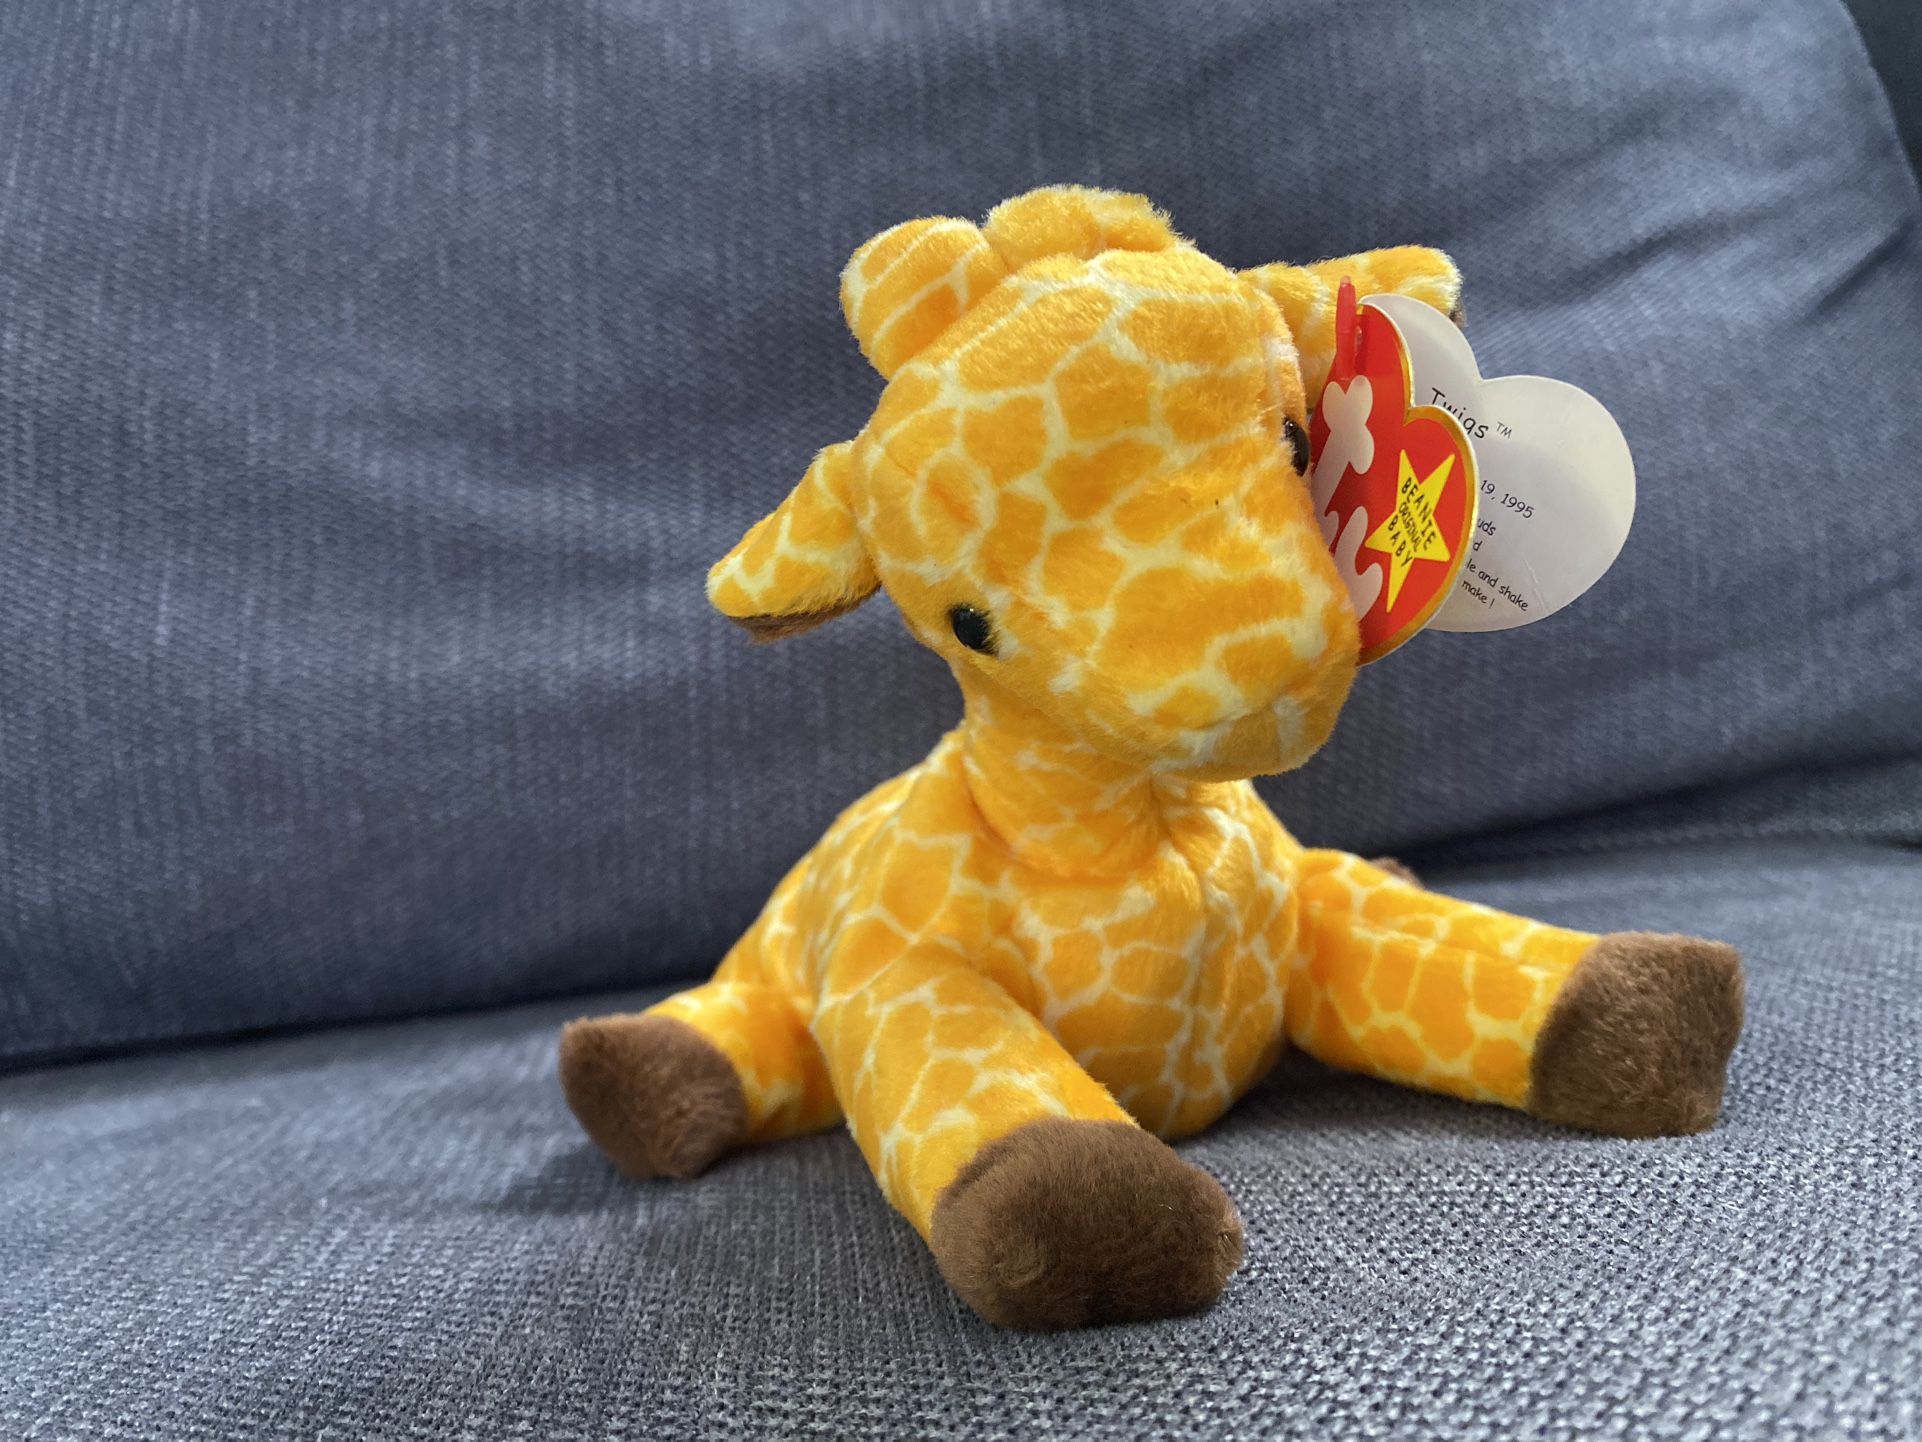 TY Beanie Baby - "Twigs" Giraffe - 1995